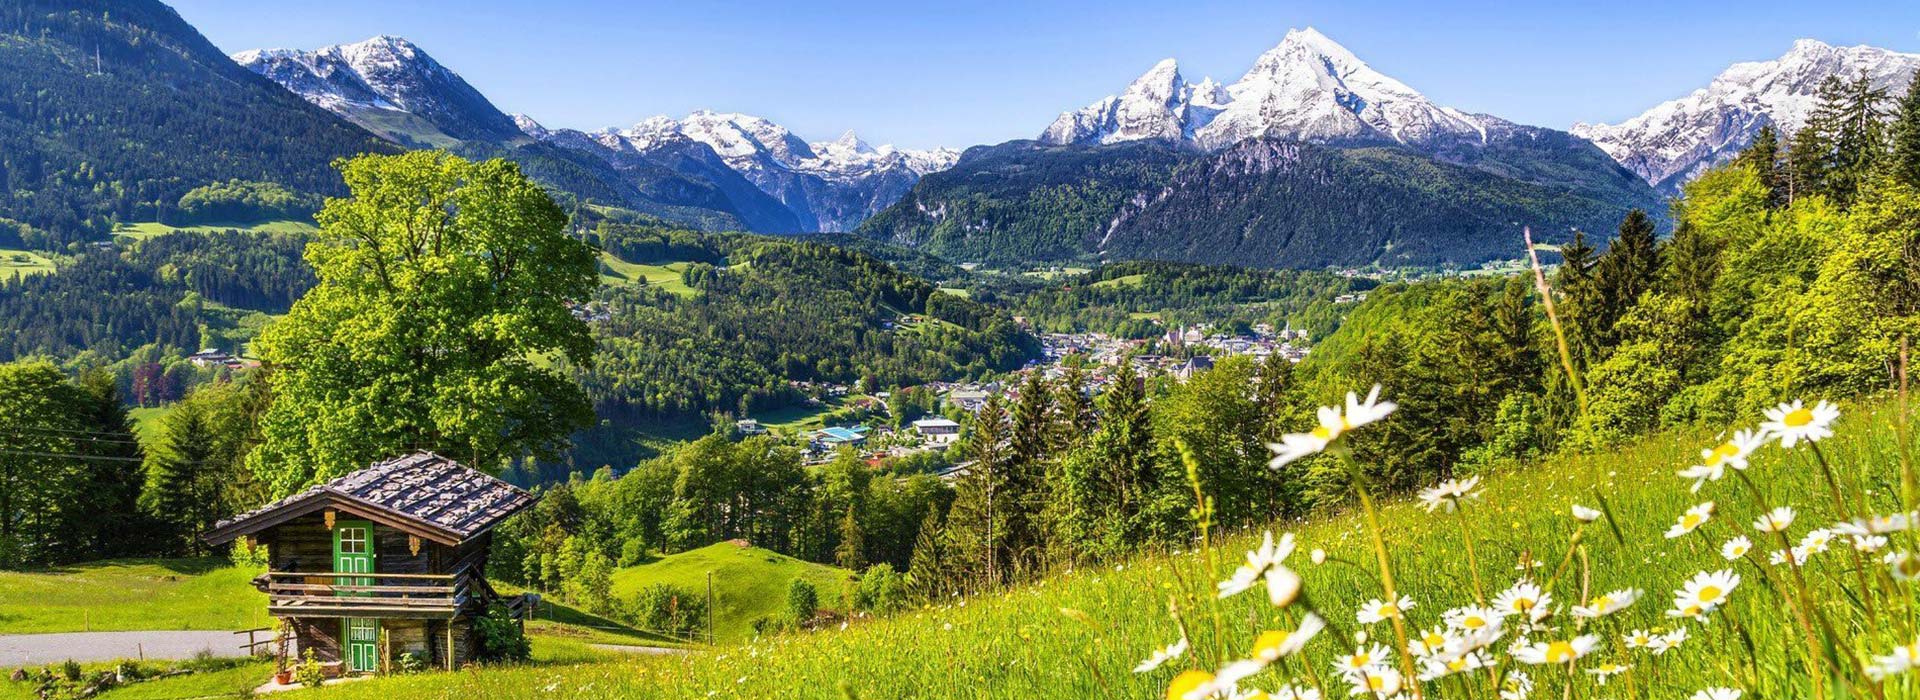 سفر به سوئیس کشور زیبایی های بکر و طبیعت آرام